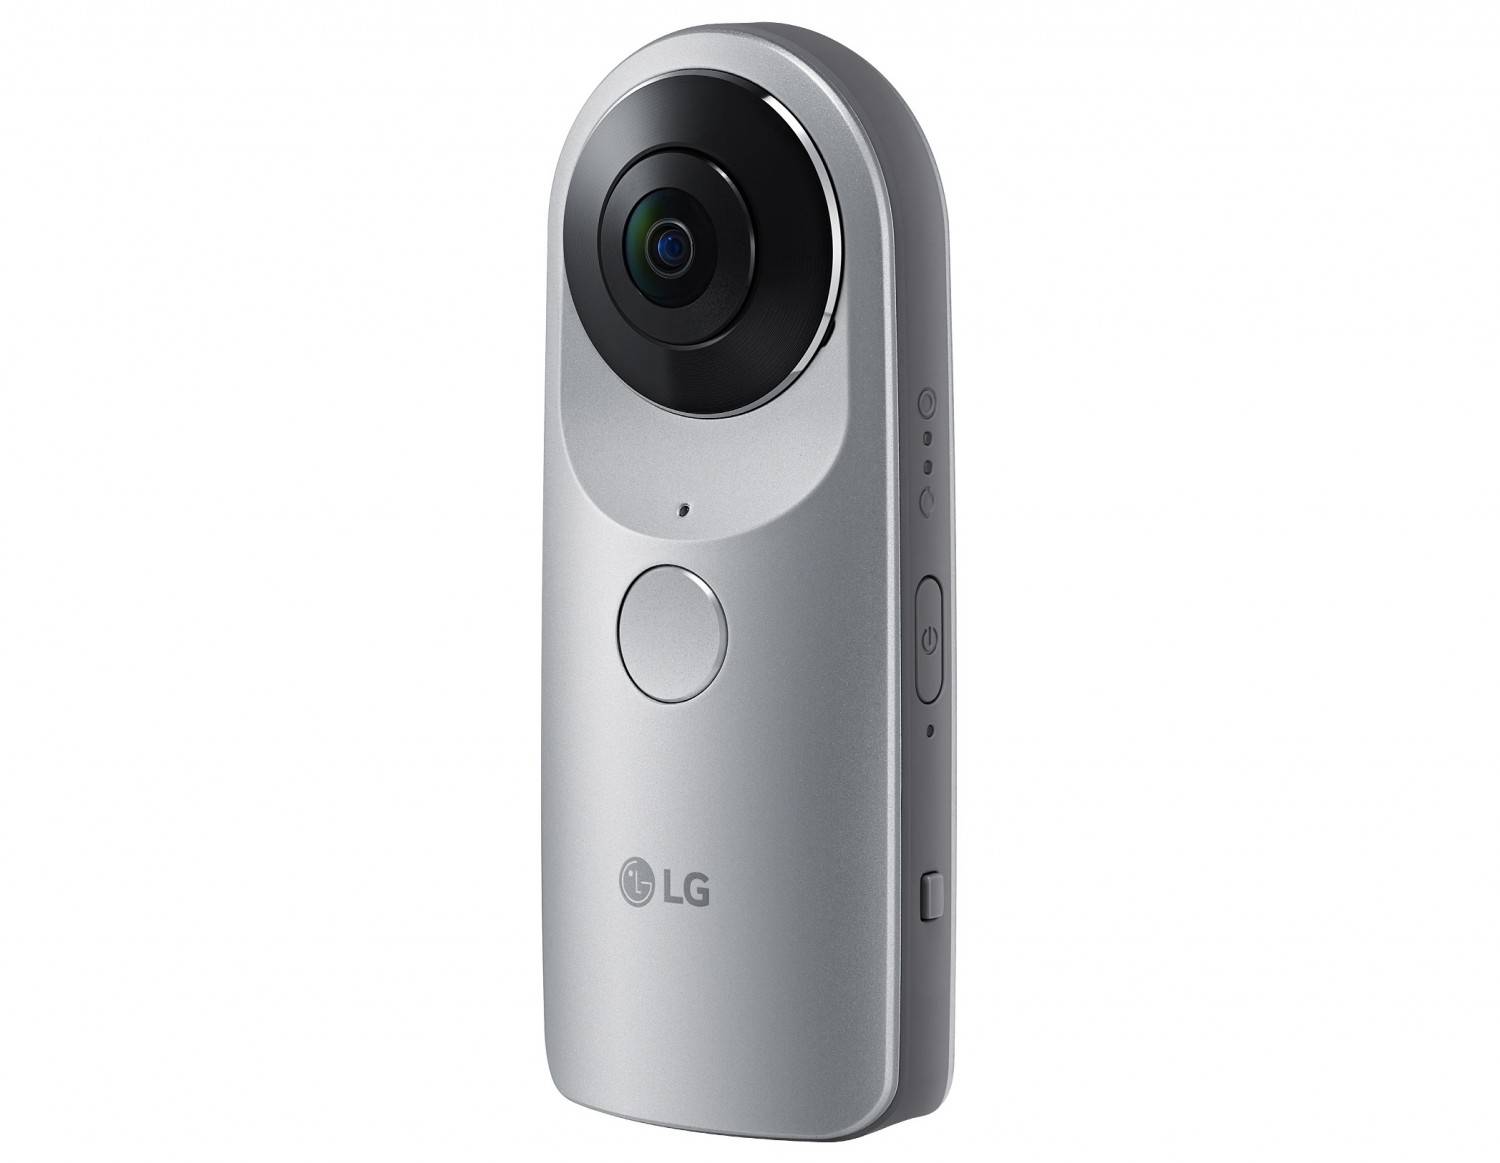 mobile Devices LG stellt neues Smartphone G5 vor: Modulares System - Digitalkamera oder HiFi-Anlage - News, Bild 3